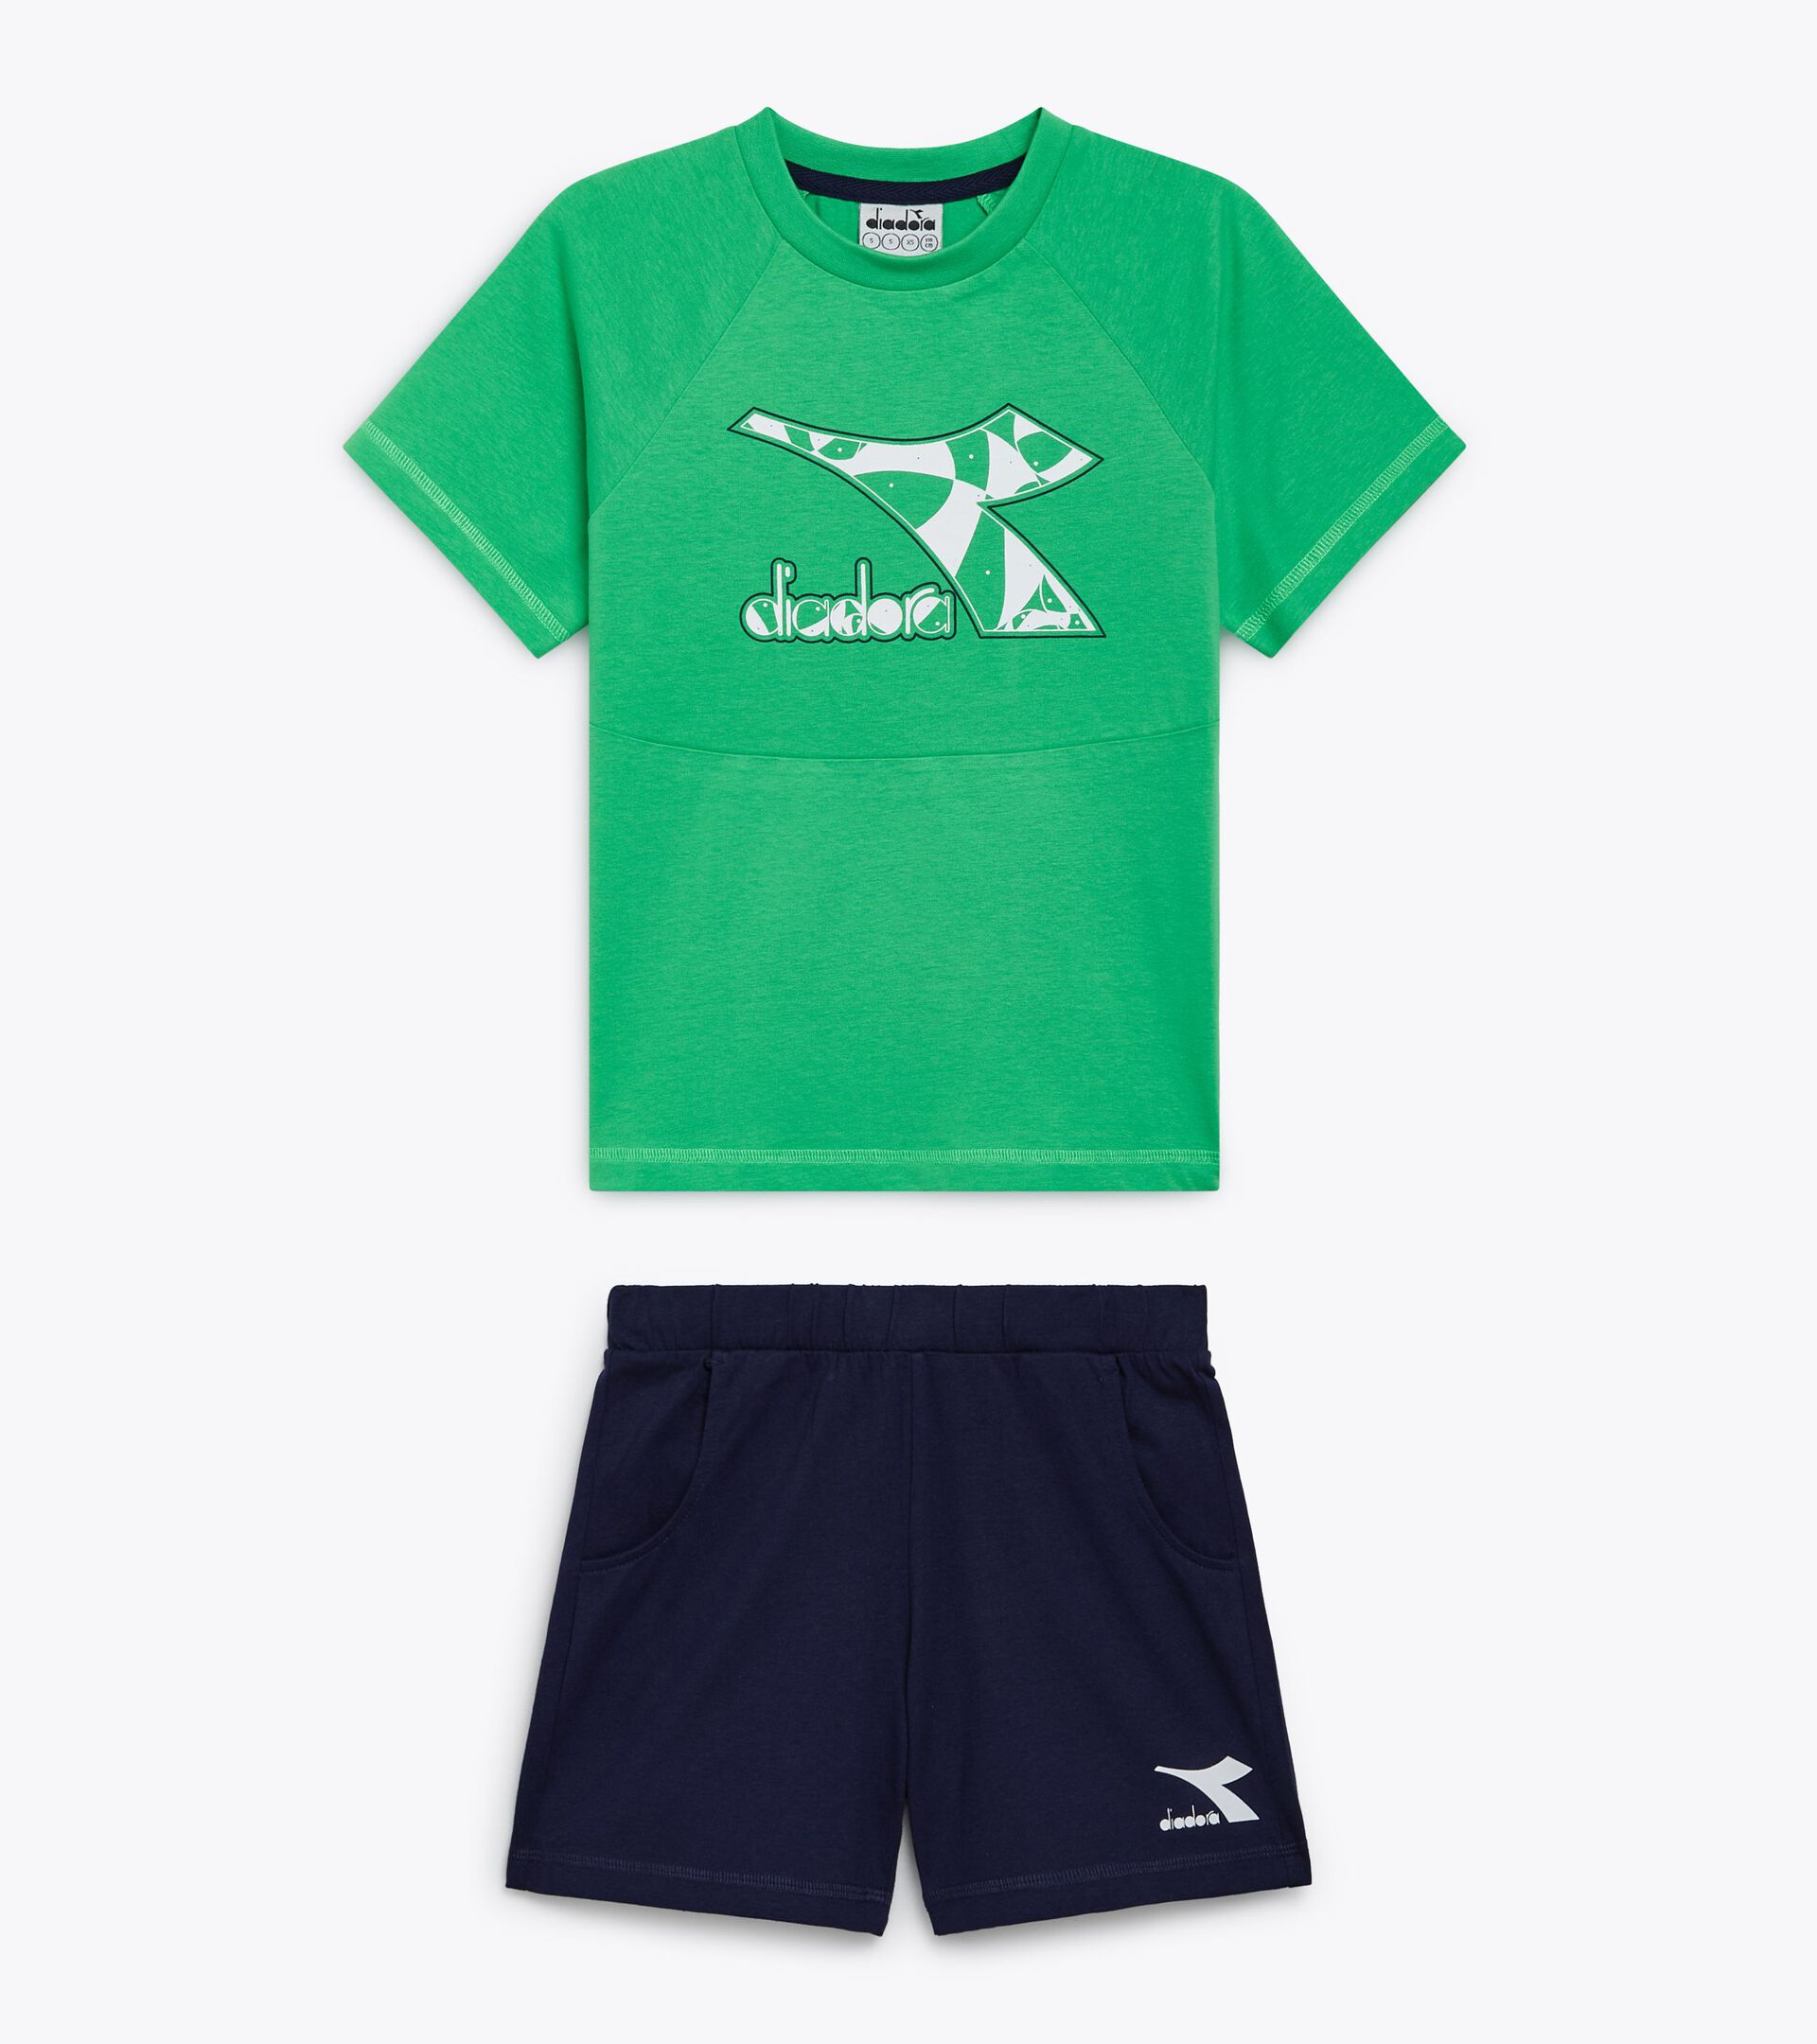 Conjunto deportivo - Camiseta y pantalones cortos - Niños y adolescentes
 JB. SET SS RIDDLE VERDE VENENO - Diadora